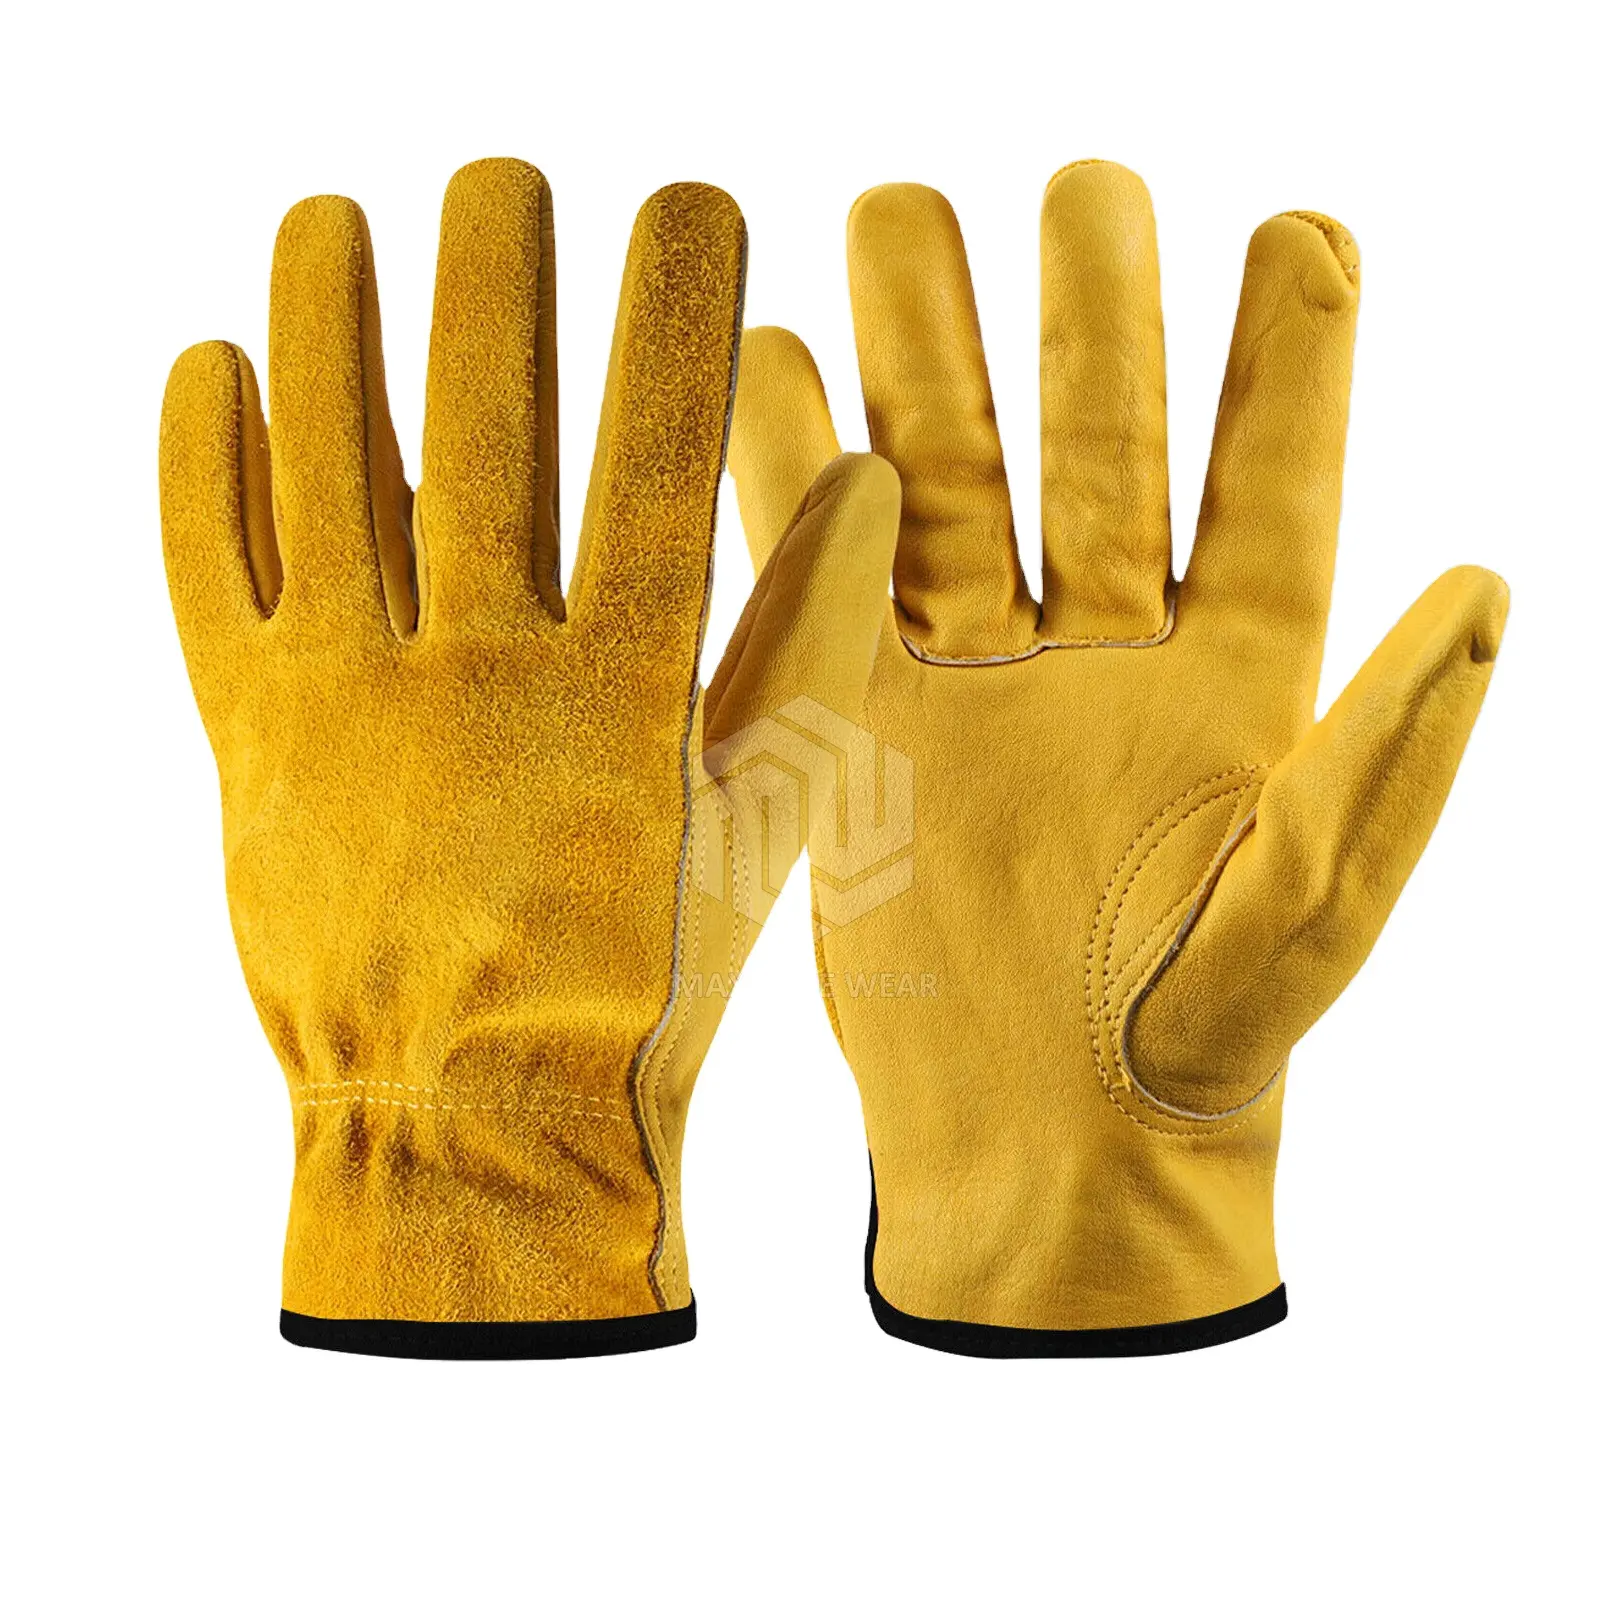 ถุงมือทำงานหนังกันหนามสีเหลืองสำหรับผู้ชาย,ถุงมือขับรถเพื่อความปลอดภัยในการทำงานถุงมือทำสวน